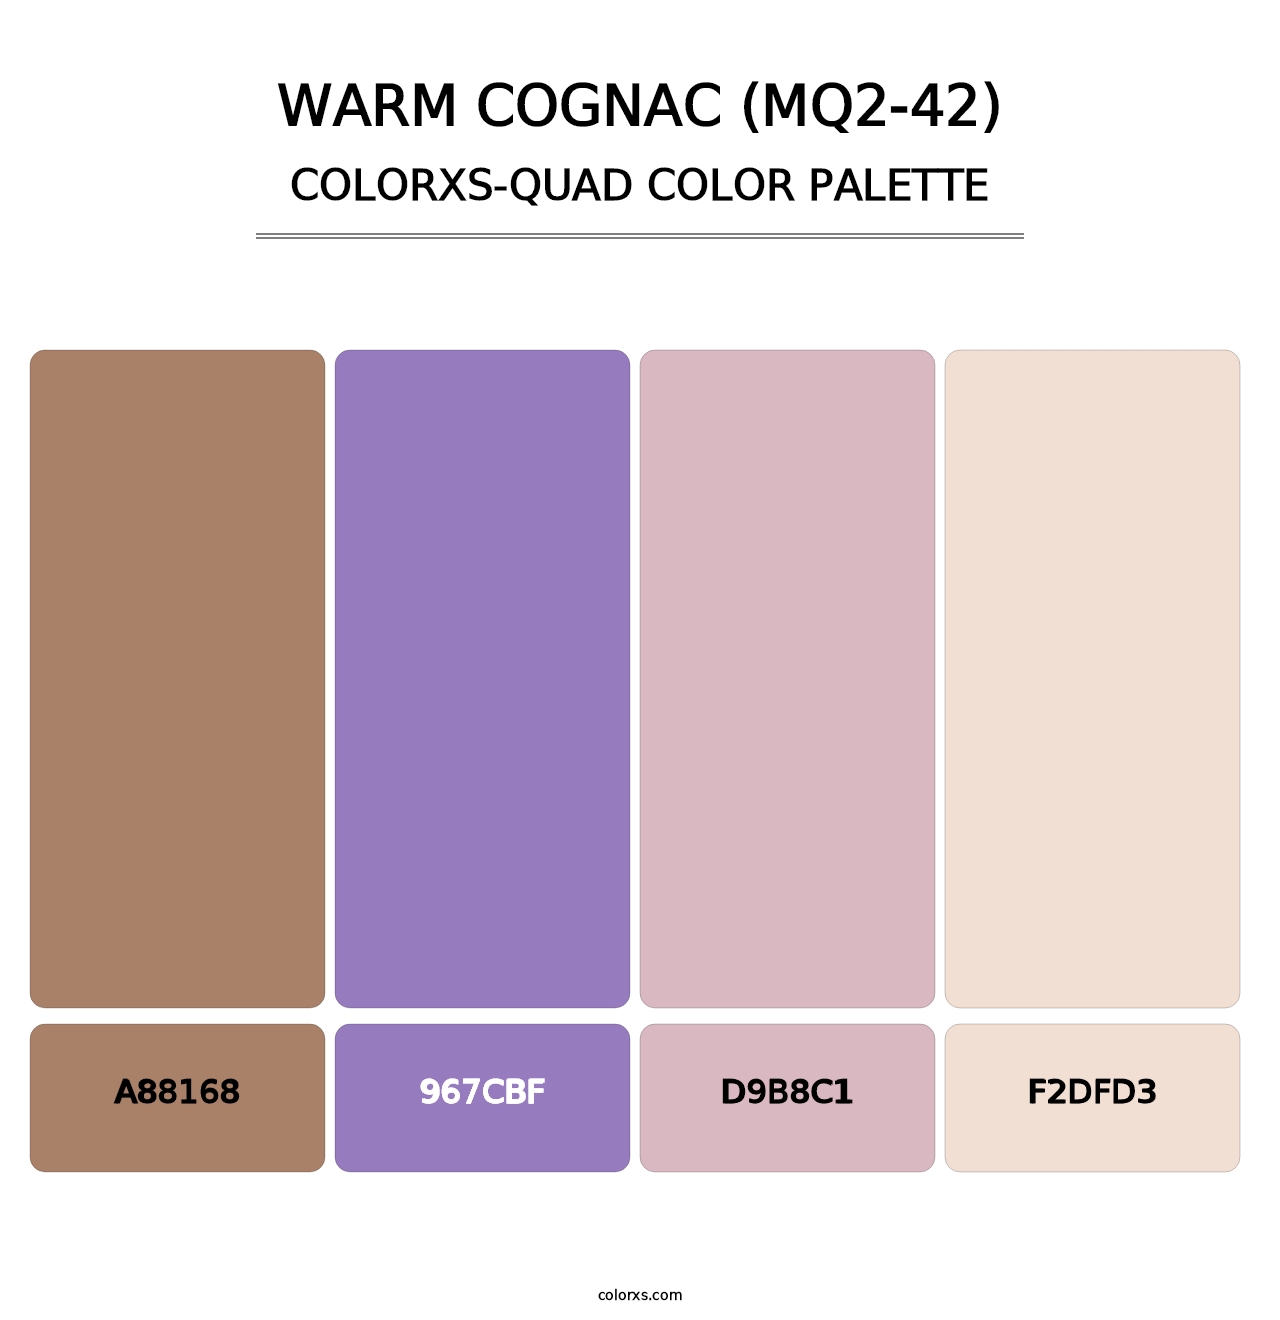 Warm Cognac (MQ2-42) - Colorxs Quad Palette